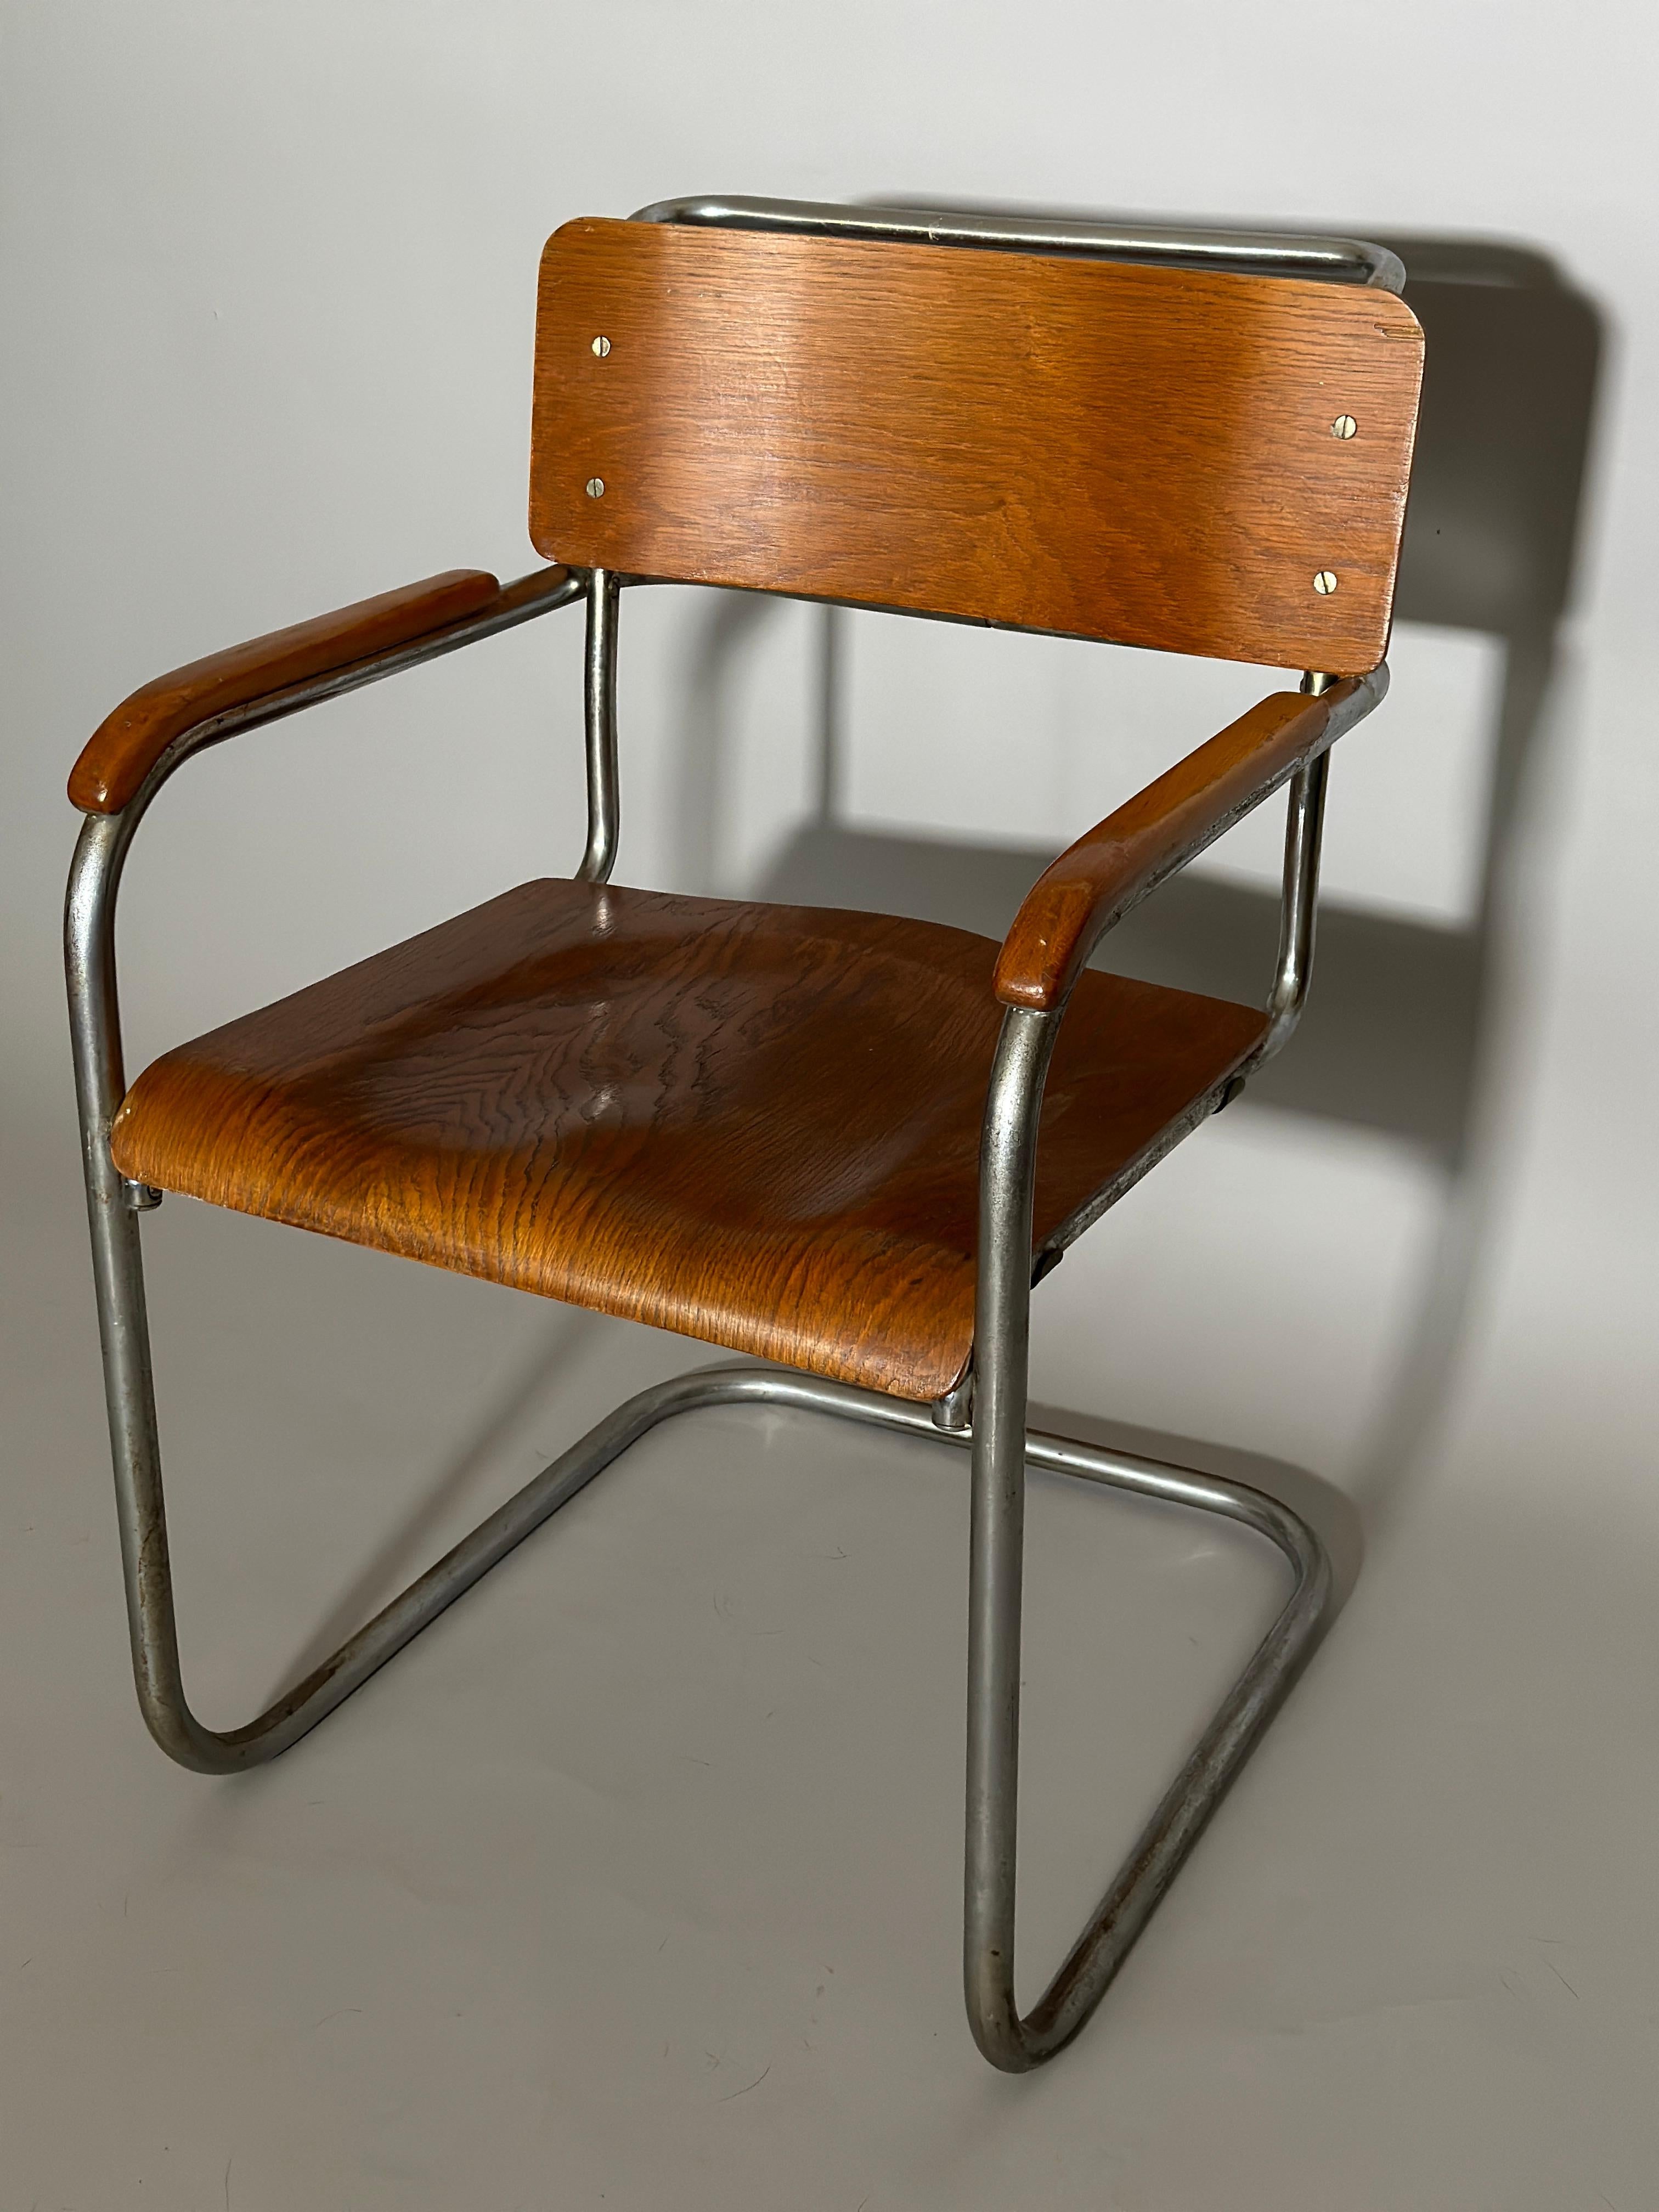 La chaise B34 de Marcel Breuer a été fabriquée en Tchécoslovaquie en 1930 pour le magasin Bata Snofmaner.